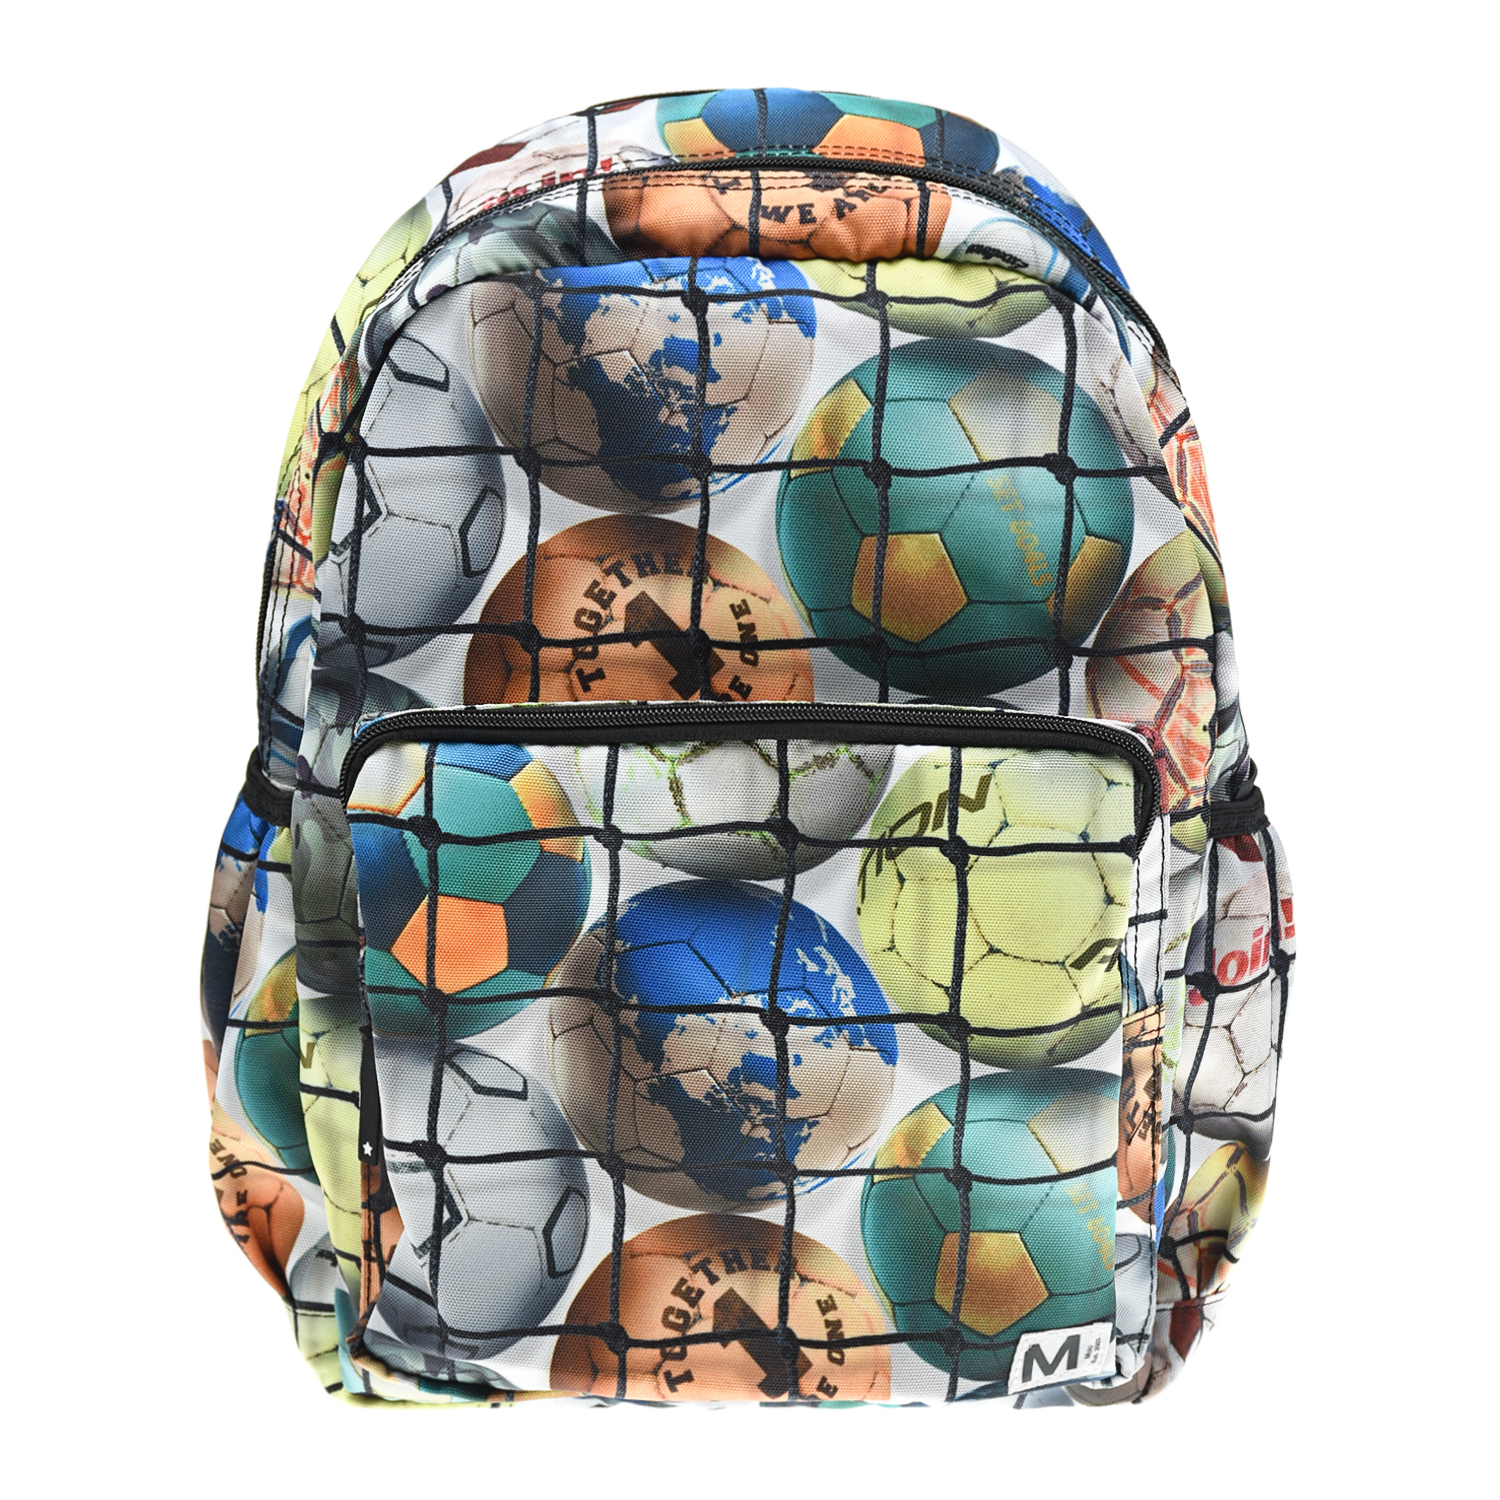 Рюкзак с принтом "Footballs" 35x35x10 см Molo детский, размер unica, цвет мультиколор